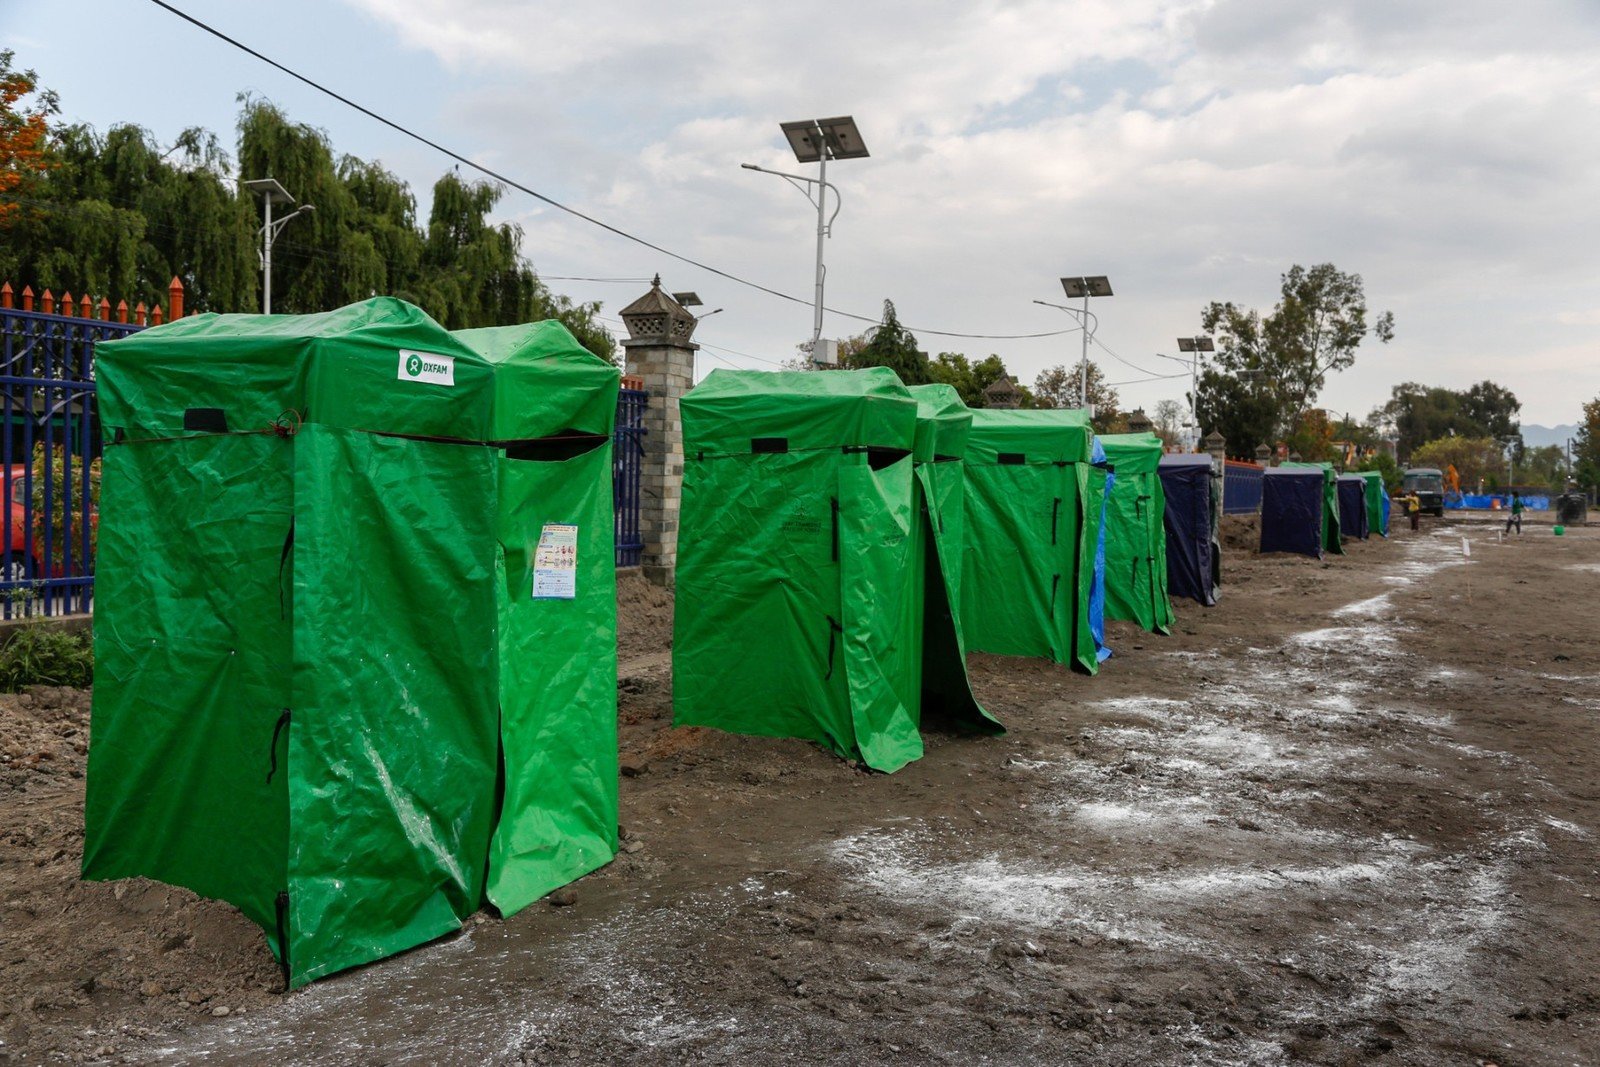 PR4 : 灾区的卫生情况开始恶化，乐施会在多个营区紧急搭建卫生设施，如临时厕所，以防疫症爆发。(Aubrey Wade / Oxfam)